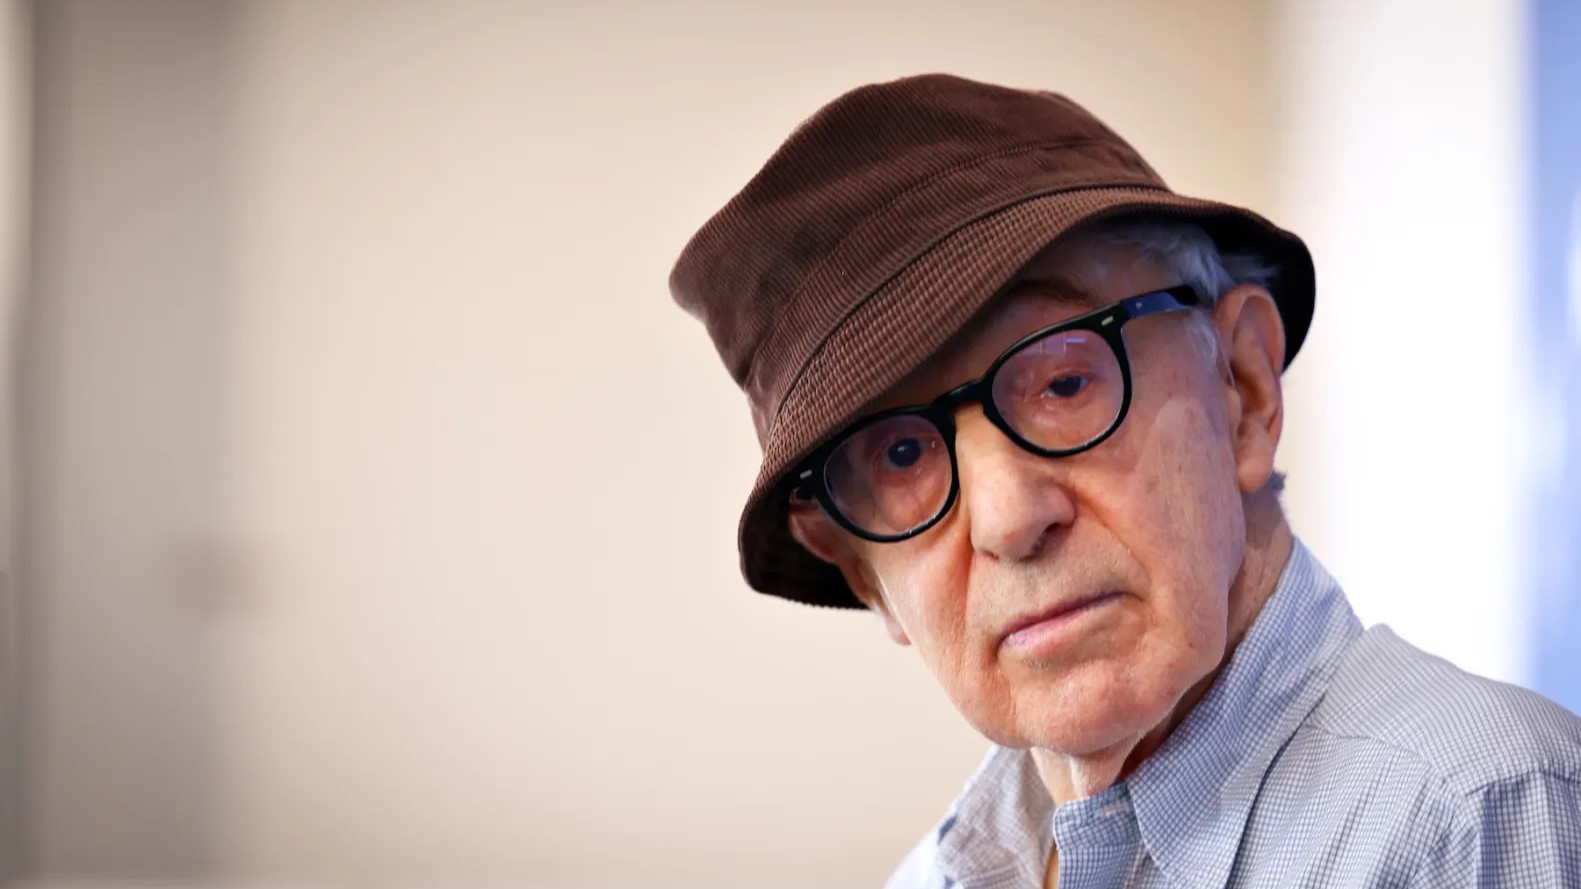 Woody Allen revient sur le baiser non consenti de Luis Rubiales : "Il ne l’a pas violée"